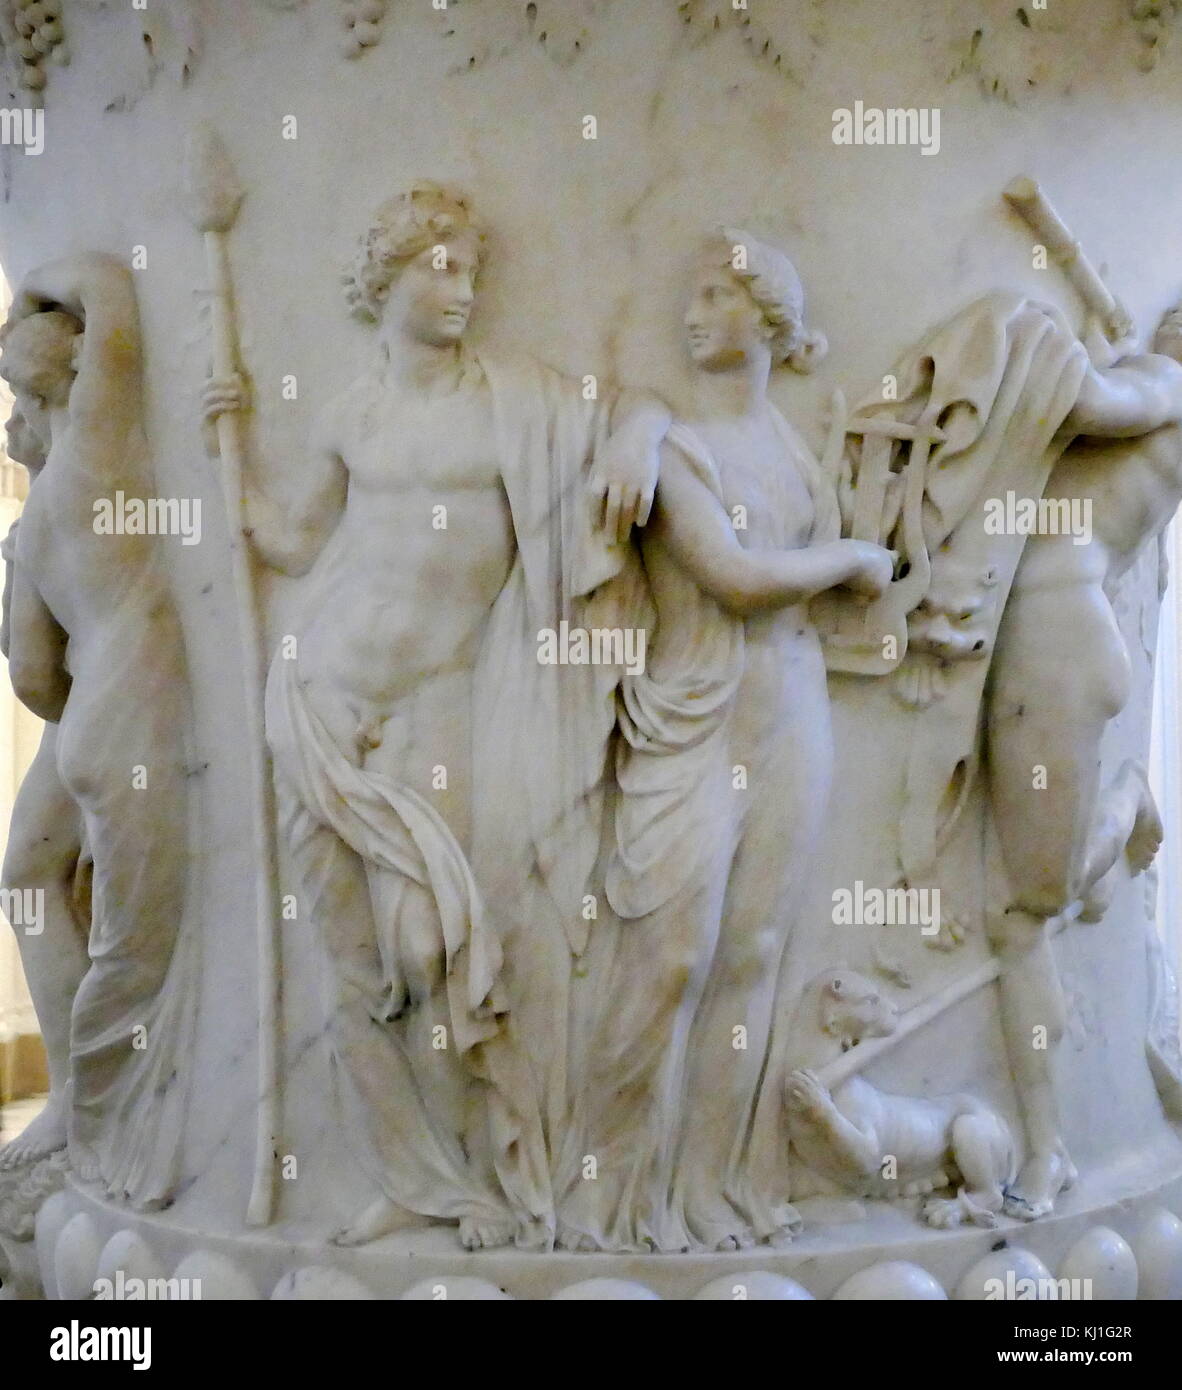 1780 copie de la Vase Médicis. Le Vase Médicis est un monumental en forme de cloche sculpté cratère à Athènes dans la seconde moitié du 1er siècle de notre ère qu'un ornement de jardin pour le marché romain. Il est maintenant dans la galerie des Offices à Florence Banque D'Images